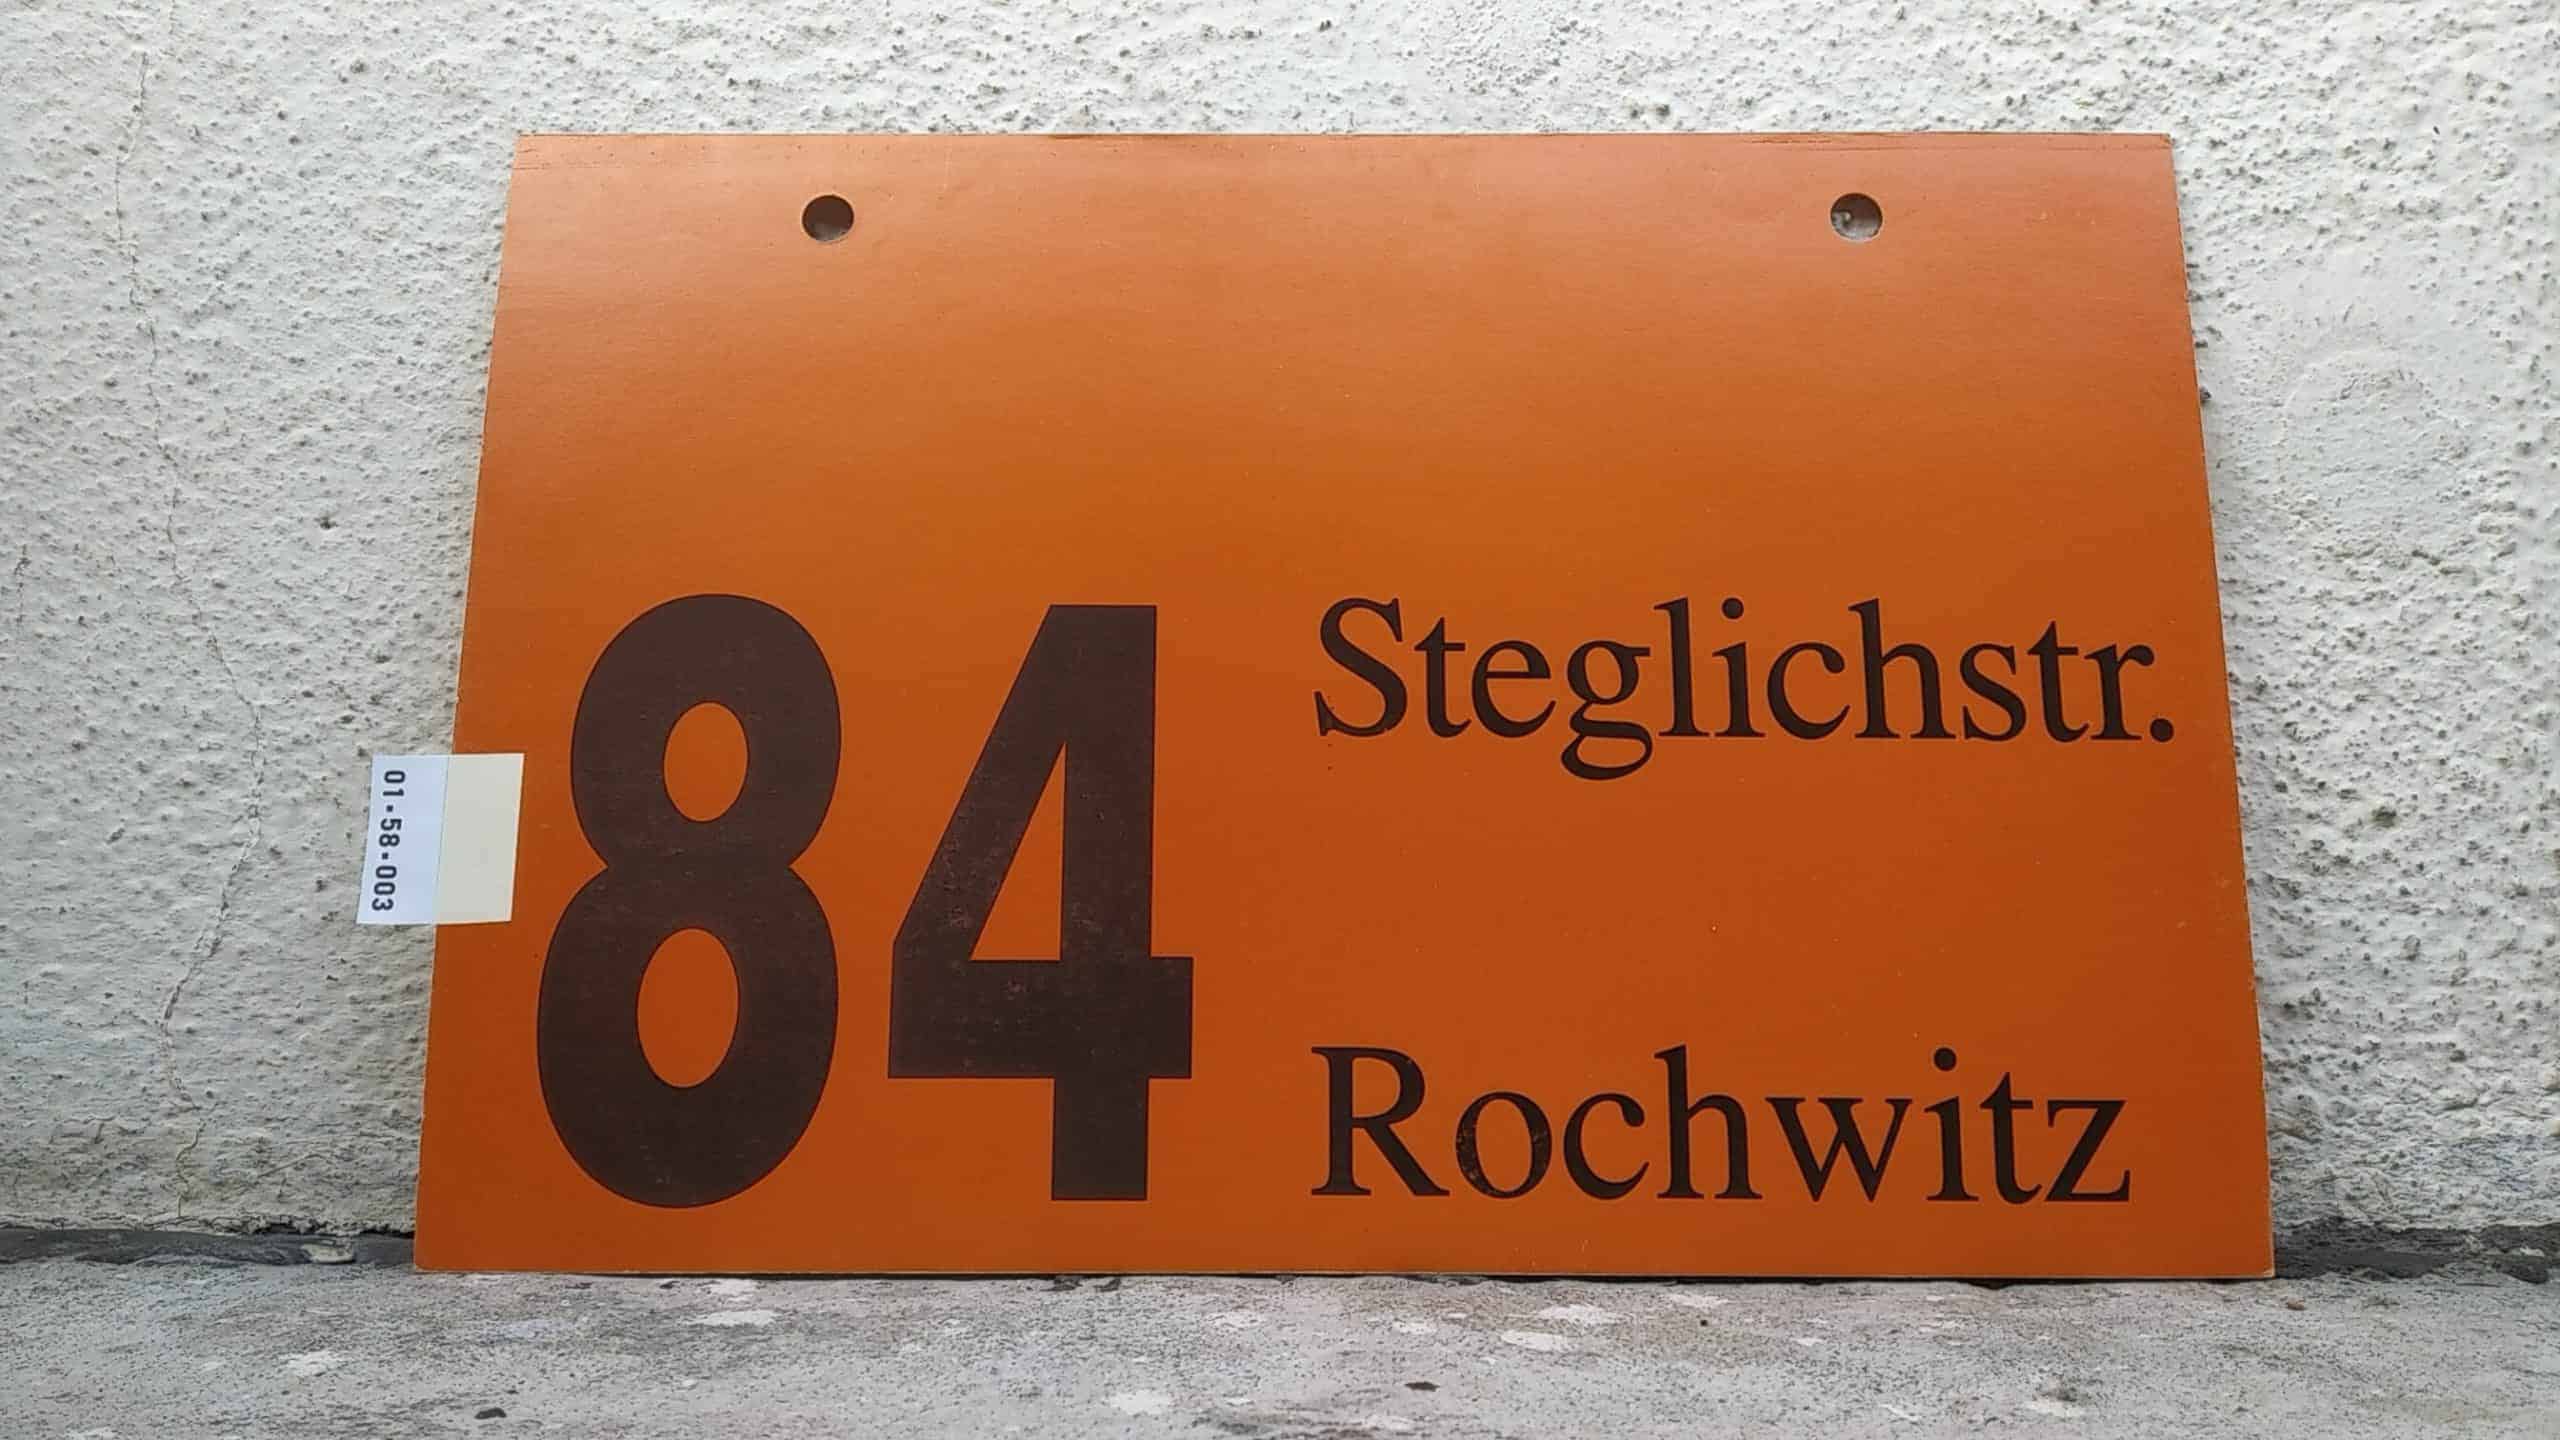 Ein seltenes Bus-Linienschild aus Dresden der Linie 84 von Steglichstr. nach Rochwitz